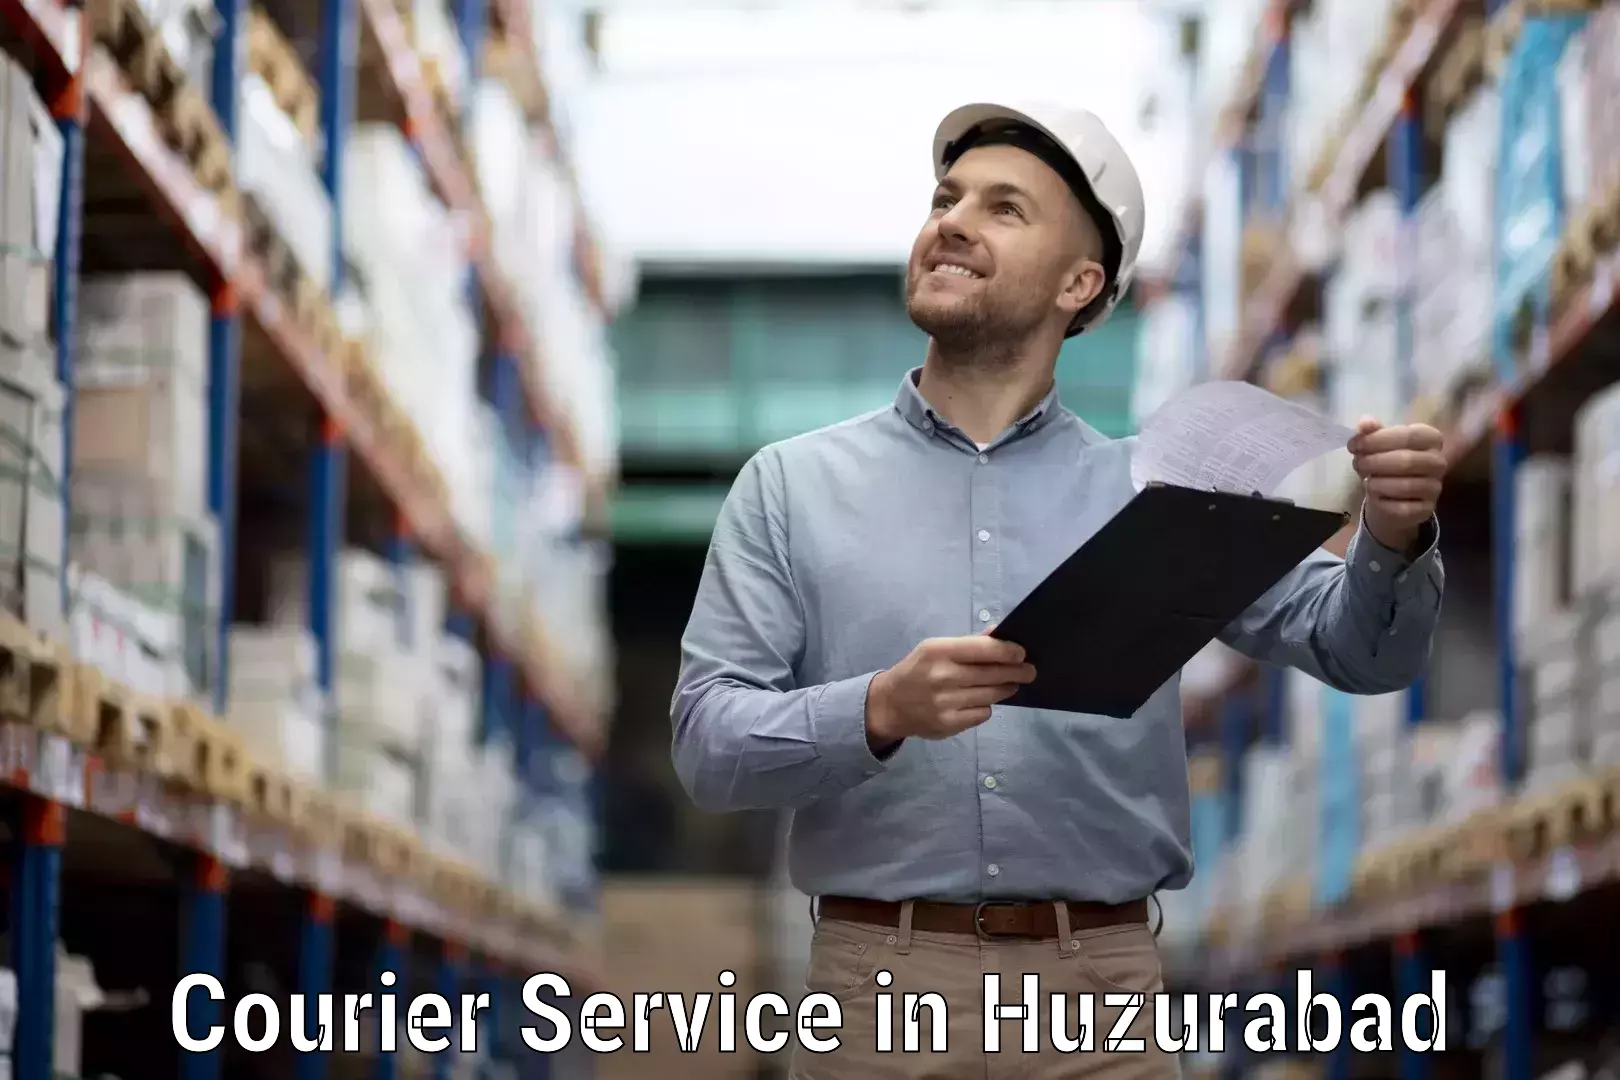 Urgent courier needs in Huzurabad